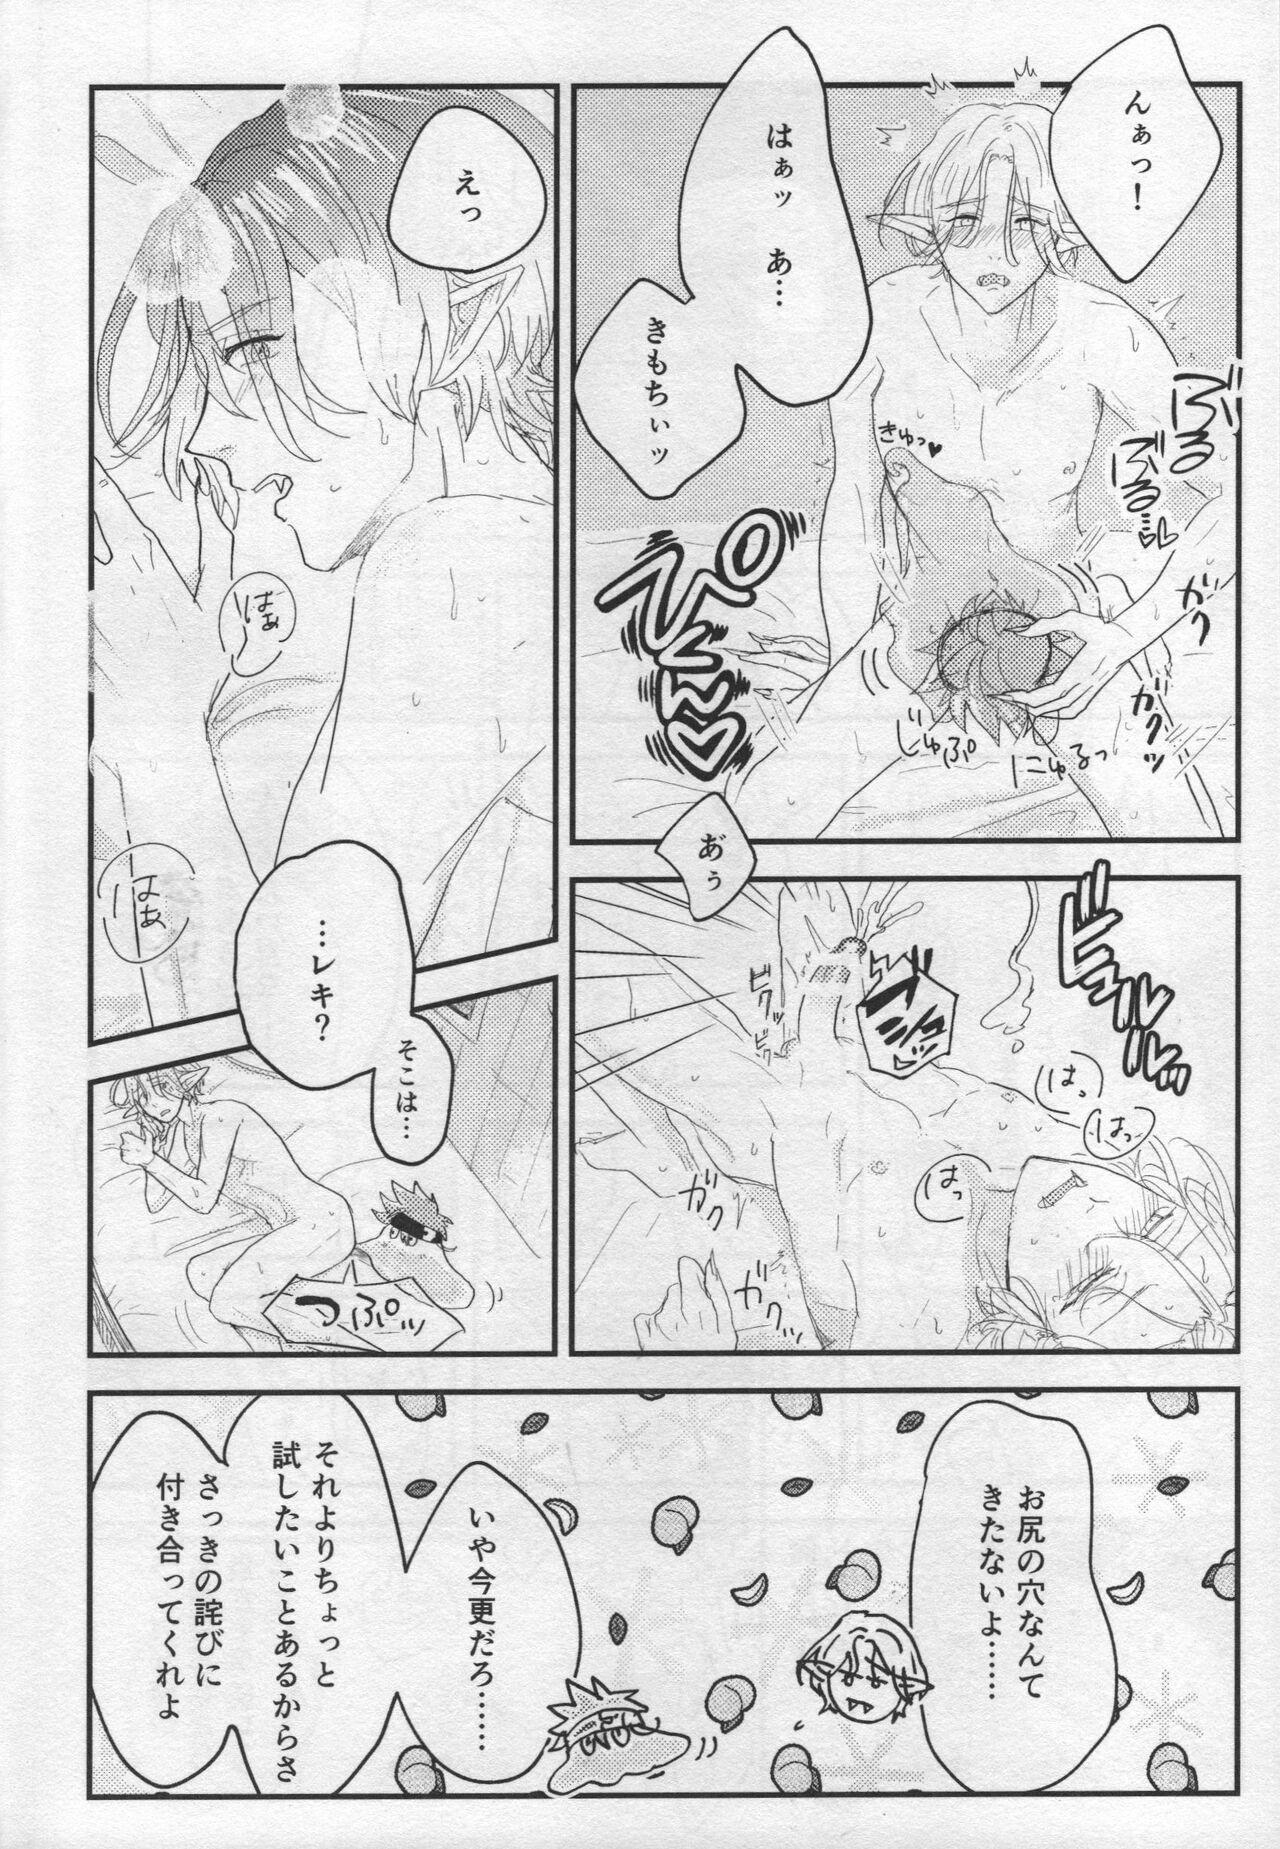 Puba Sakuya wa o tanoshimideshita ne - Sk8 the infinity Blows - Page 12